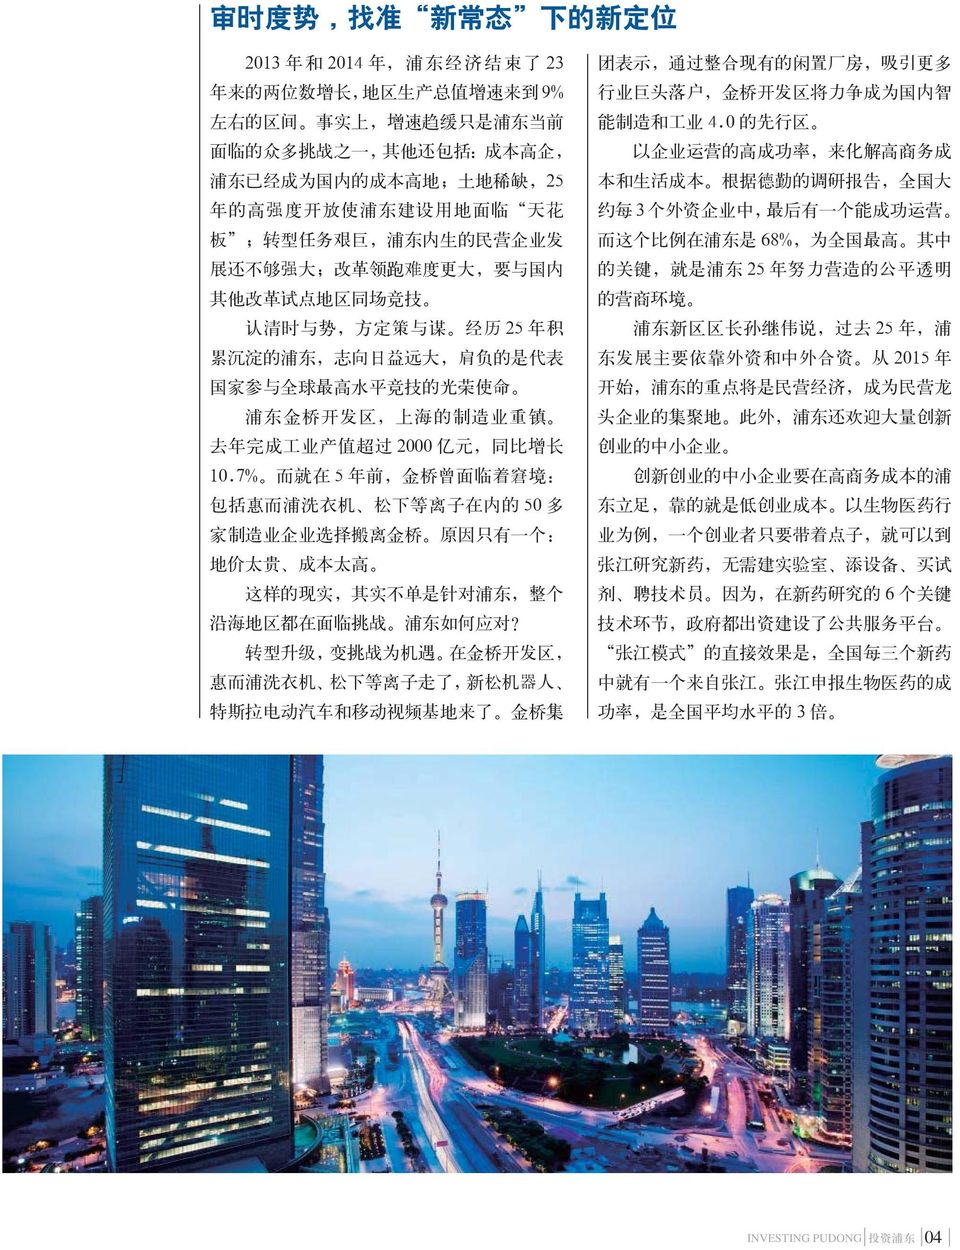 志 向 日 益 远 大, 肩 负 的 是 代 表 国 家 参 与 全 球 最 高 水 平 竞 技 的 光 荣 使 命 浦 东 金 桥 开 发 区, 上 海 的 制 造 业 重 镇 去 年 完 成 工 业 产 值 超 过 2000 亿 元, 同 比 增 长 10.